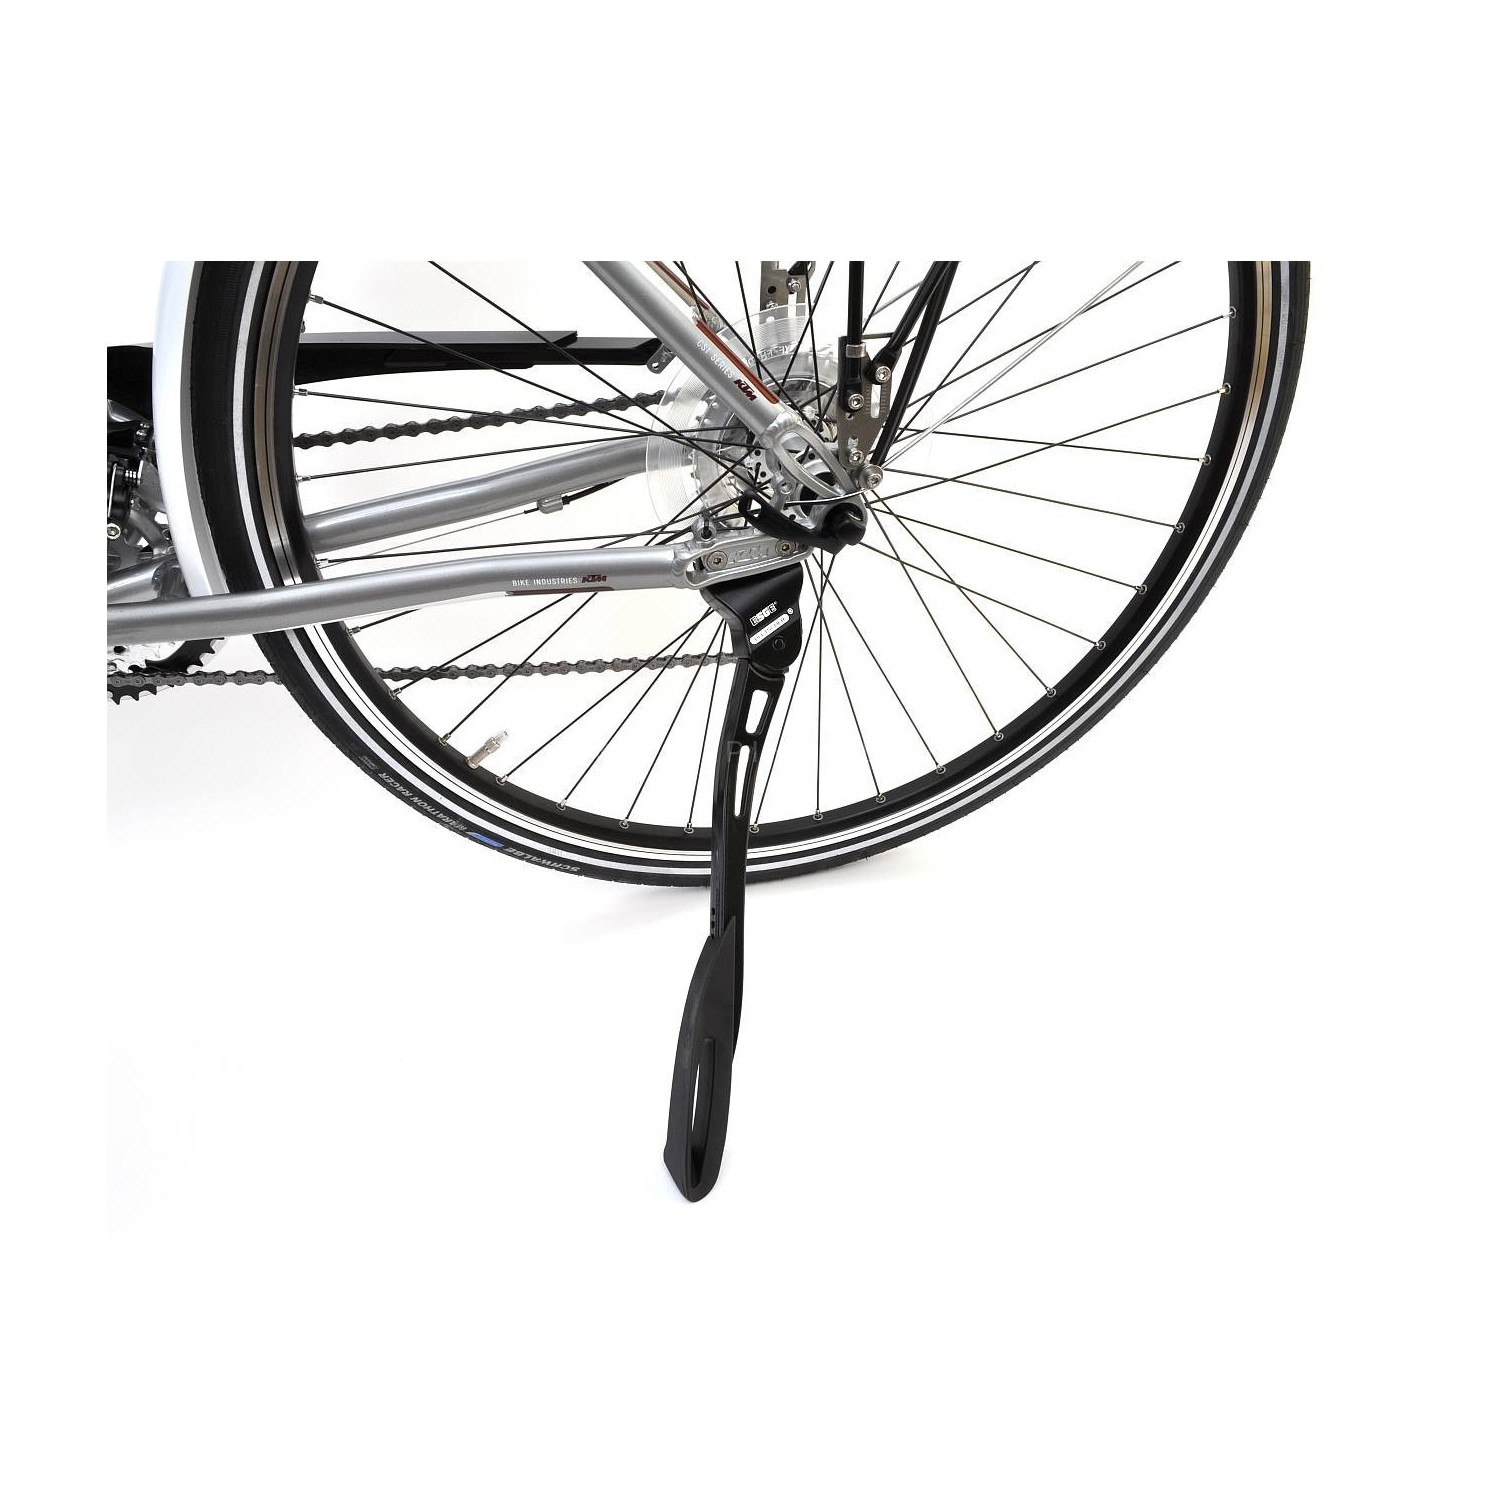 Podpórka rowerowa Pletscher Comp Zoom 40, montaż tył, koła 26–29 cali